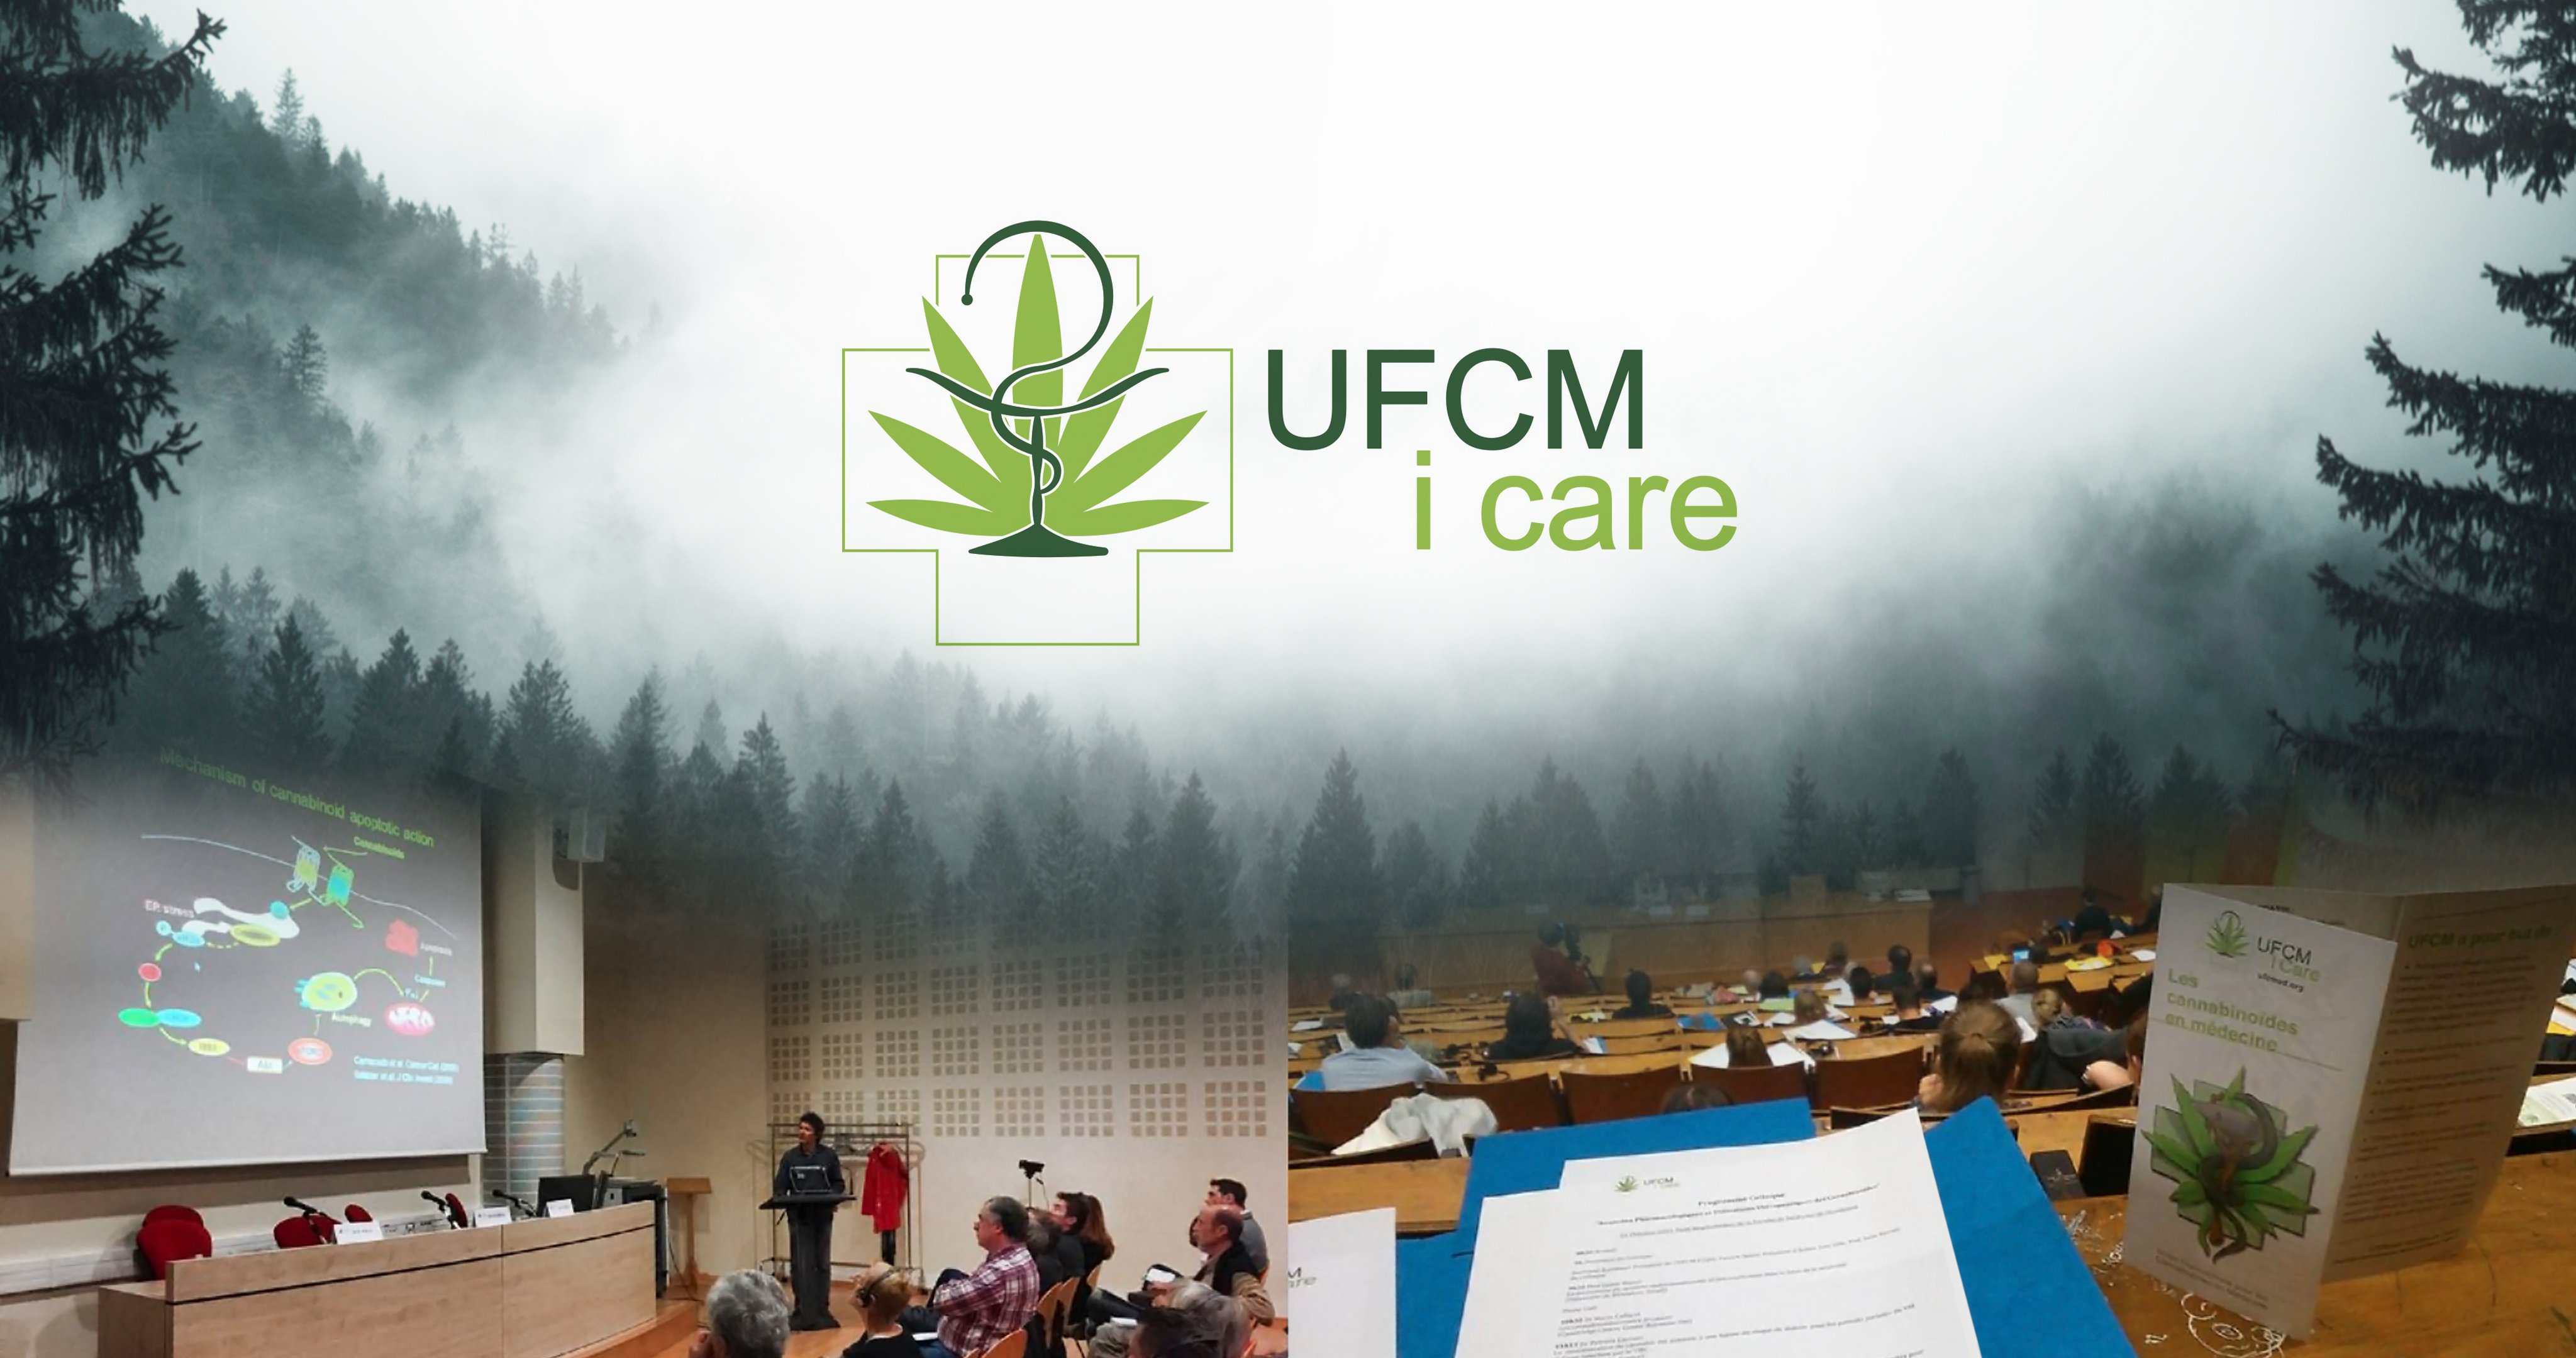 Édition 2016 du symposium de l’UFCM iCare : davantage de recherche et de débats législatifs entourant les cannabinoïdes